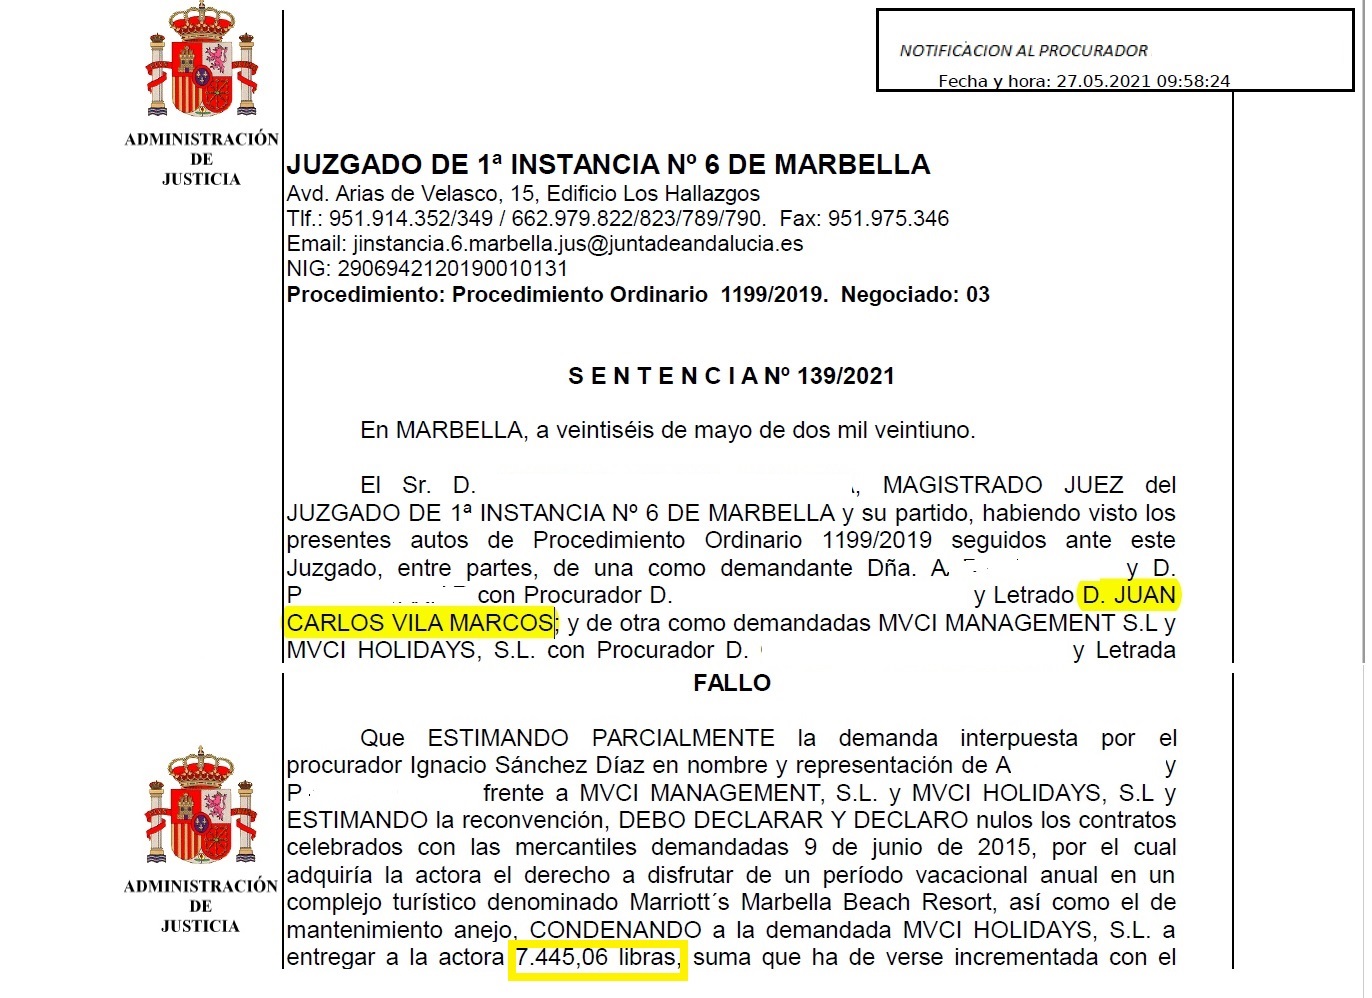 Court ruling Marriott Marbella: £7,000. May 2021.